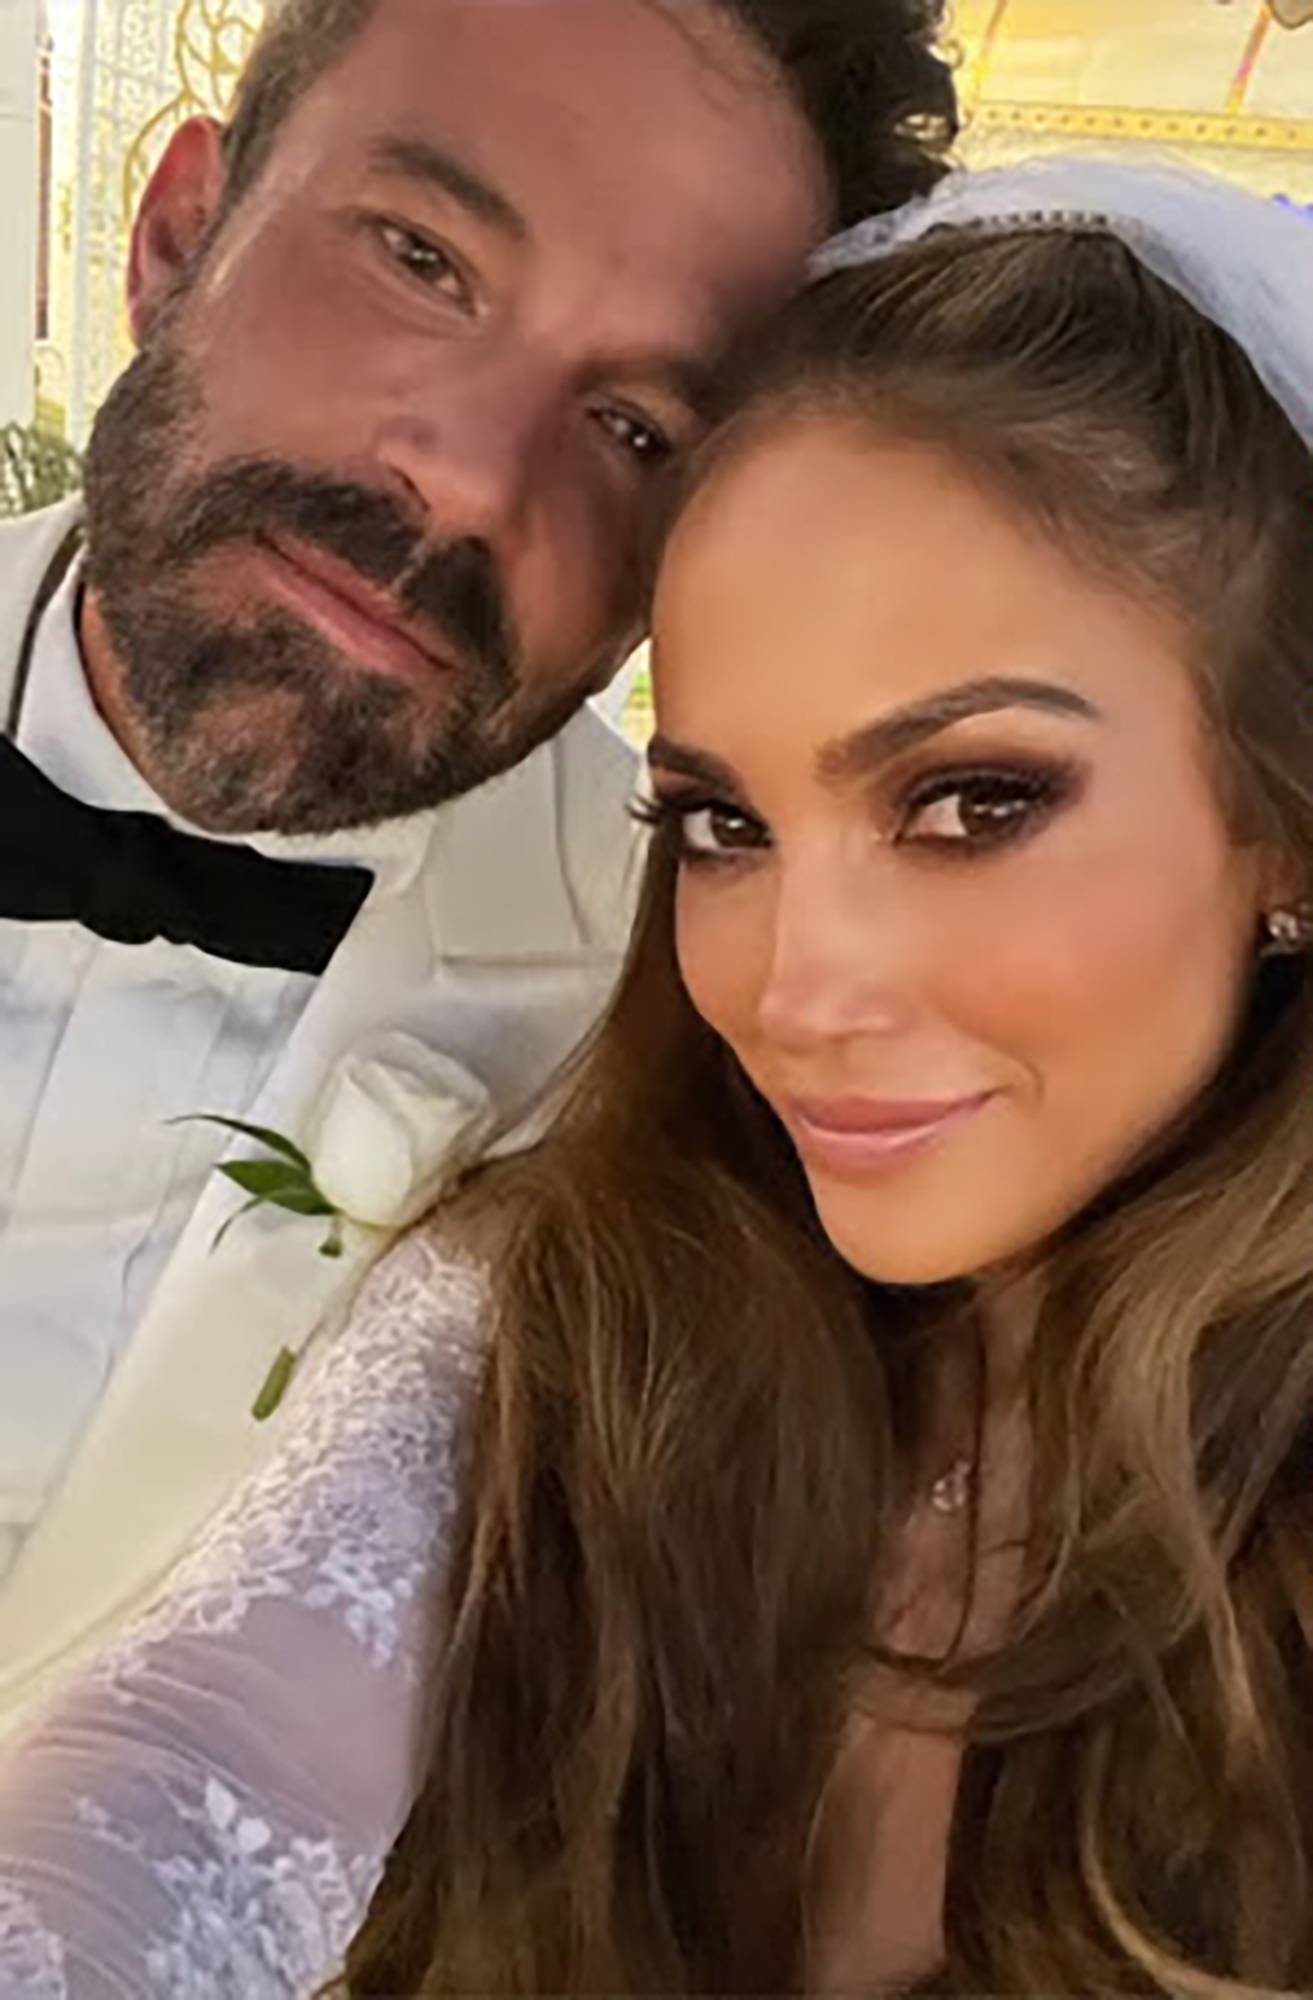 Prvi suprug Jennifer Lopez: Benu i njoj želim sve najbolje, ali mislim da brak neće potrajati